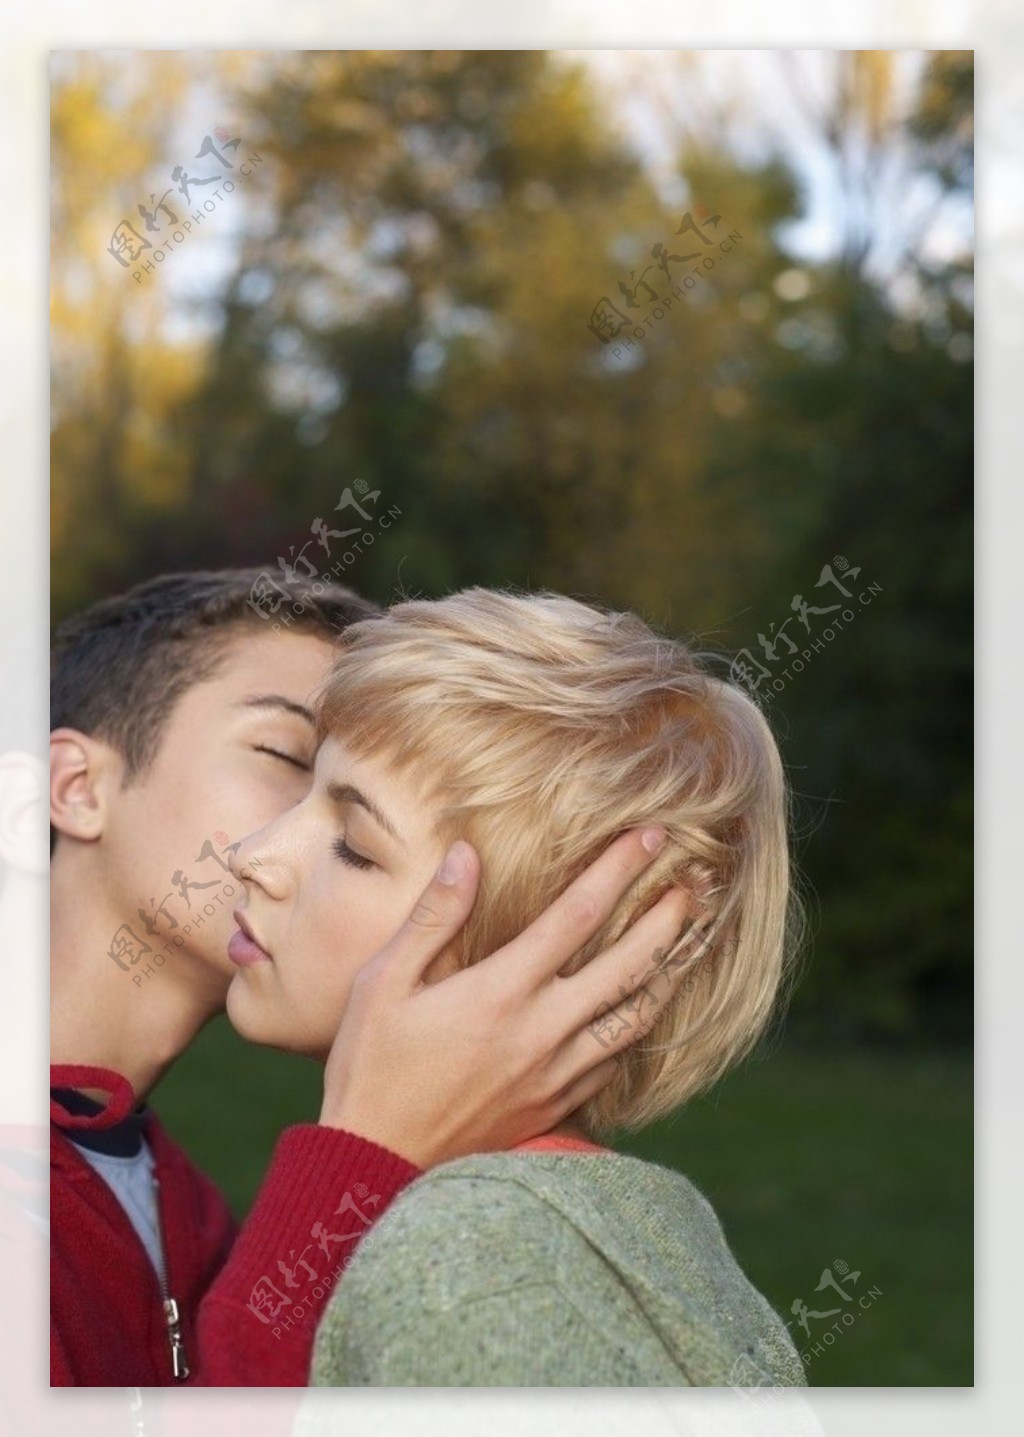 亲吻的情侣图片